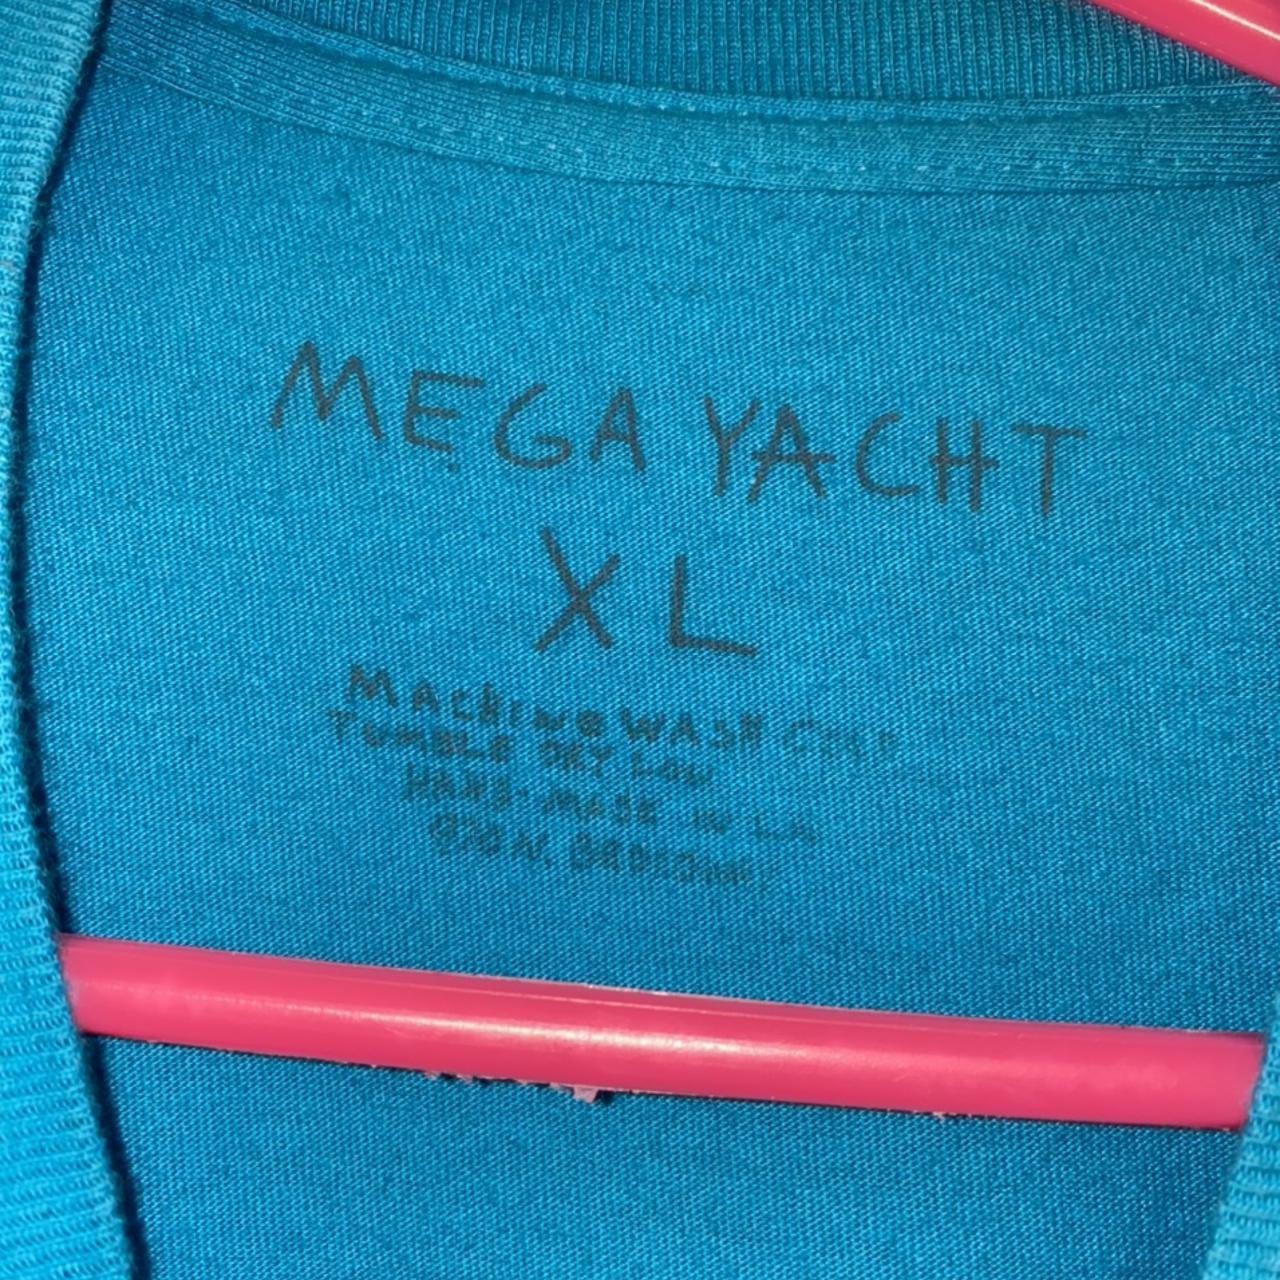 💜Brand new Mega Yacht Casper Louis Vuitton shirt💜, 💜A